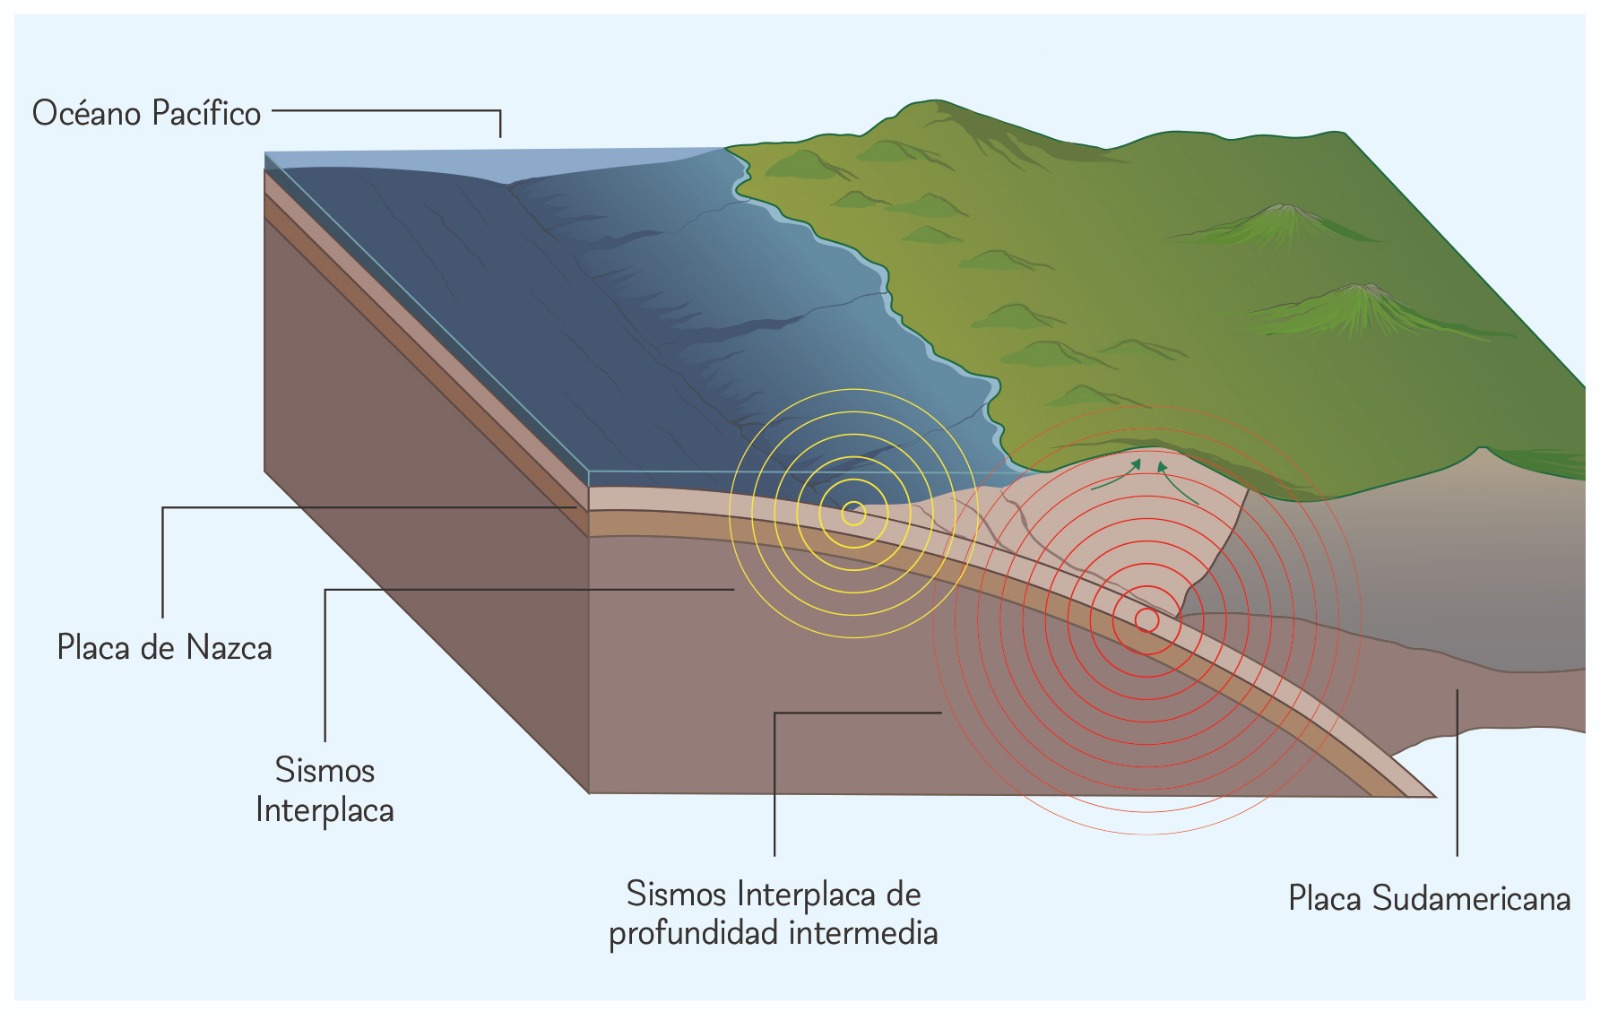 Esquema del margen de subducción Sudamericano / cedida